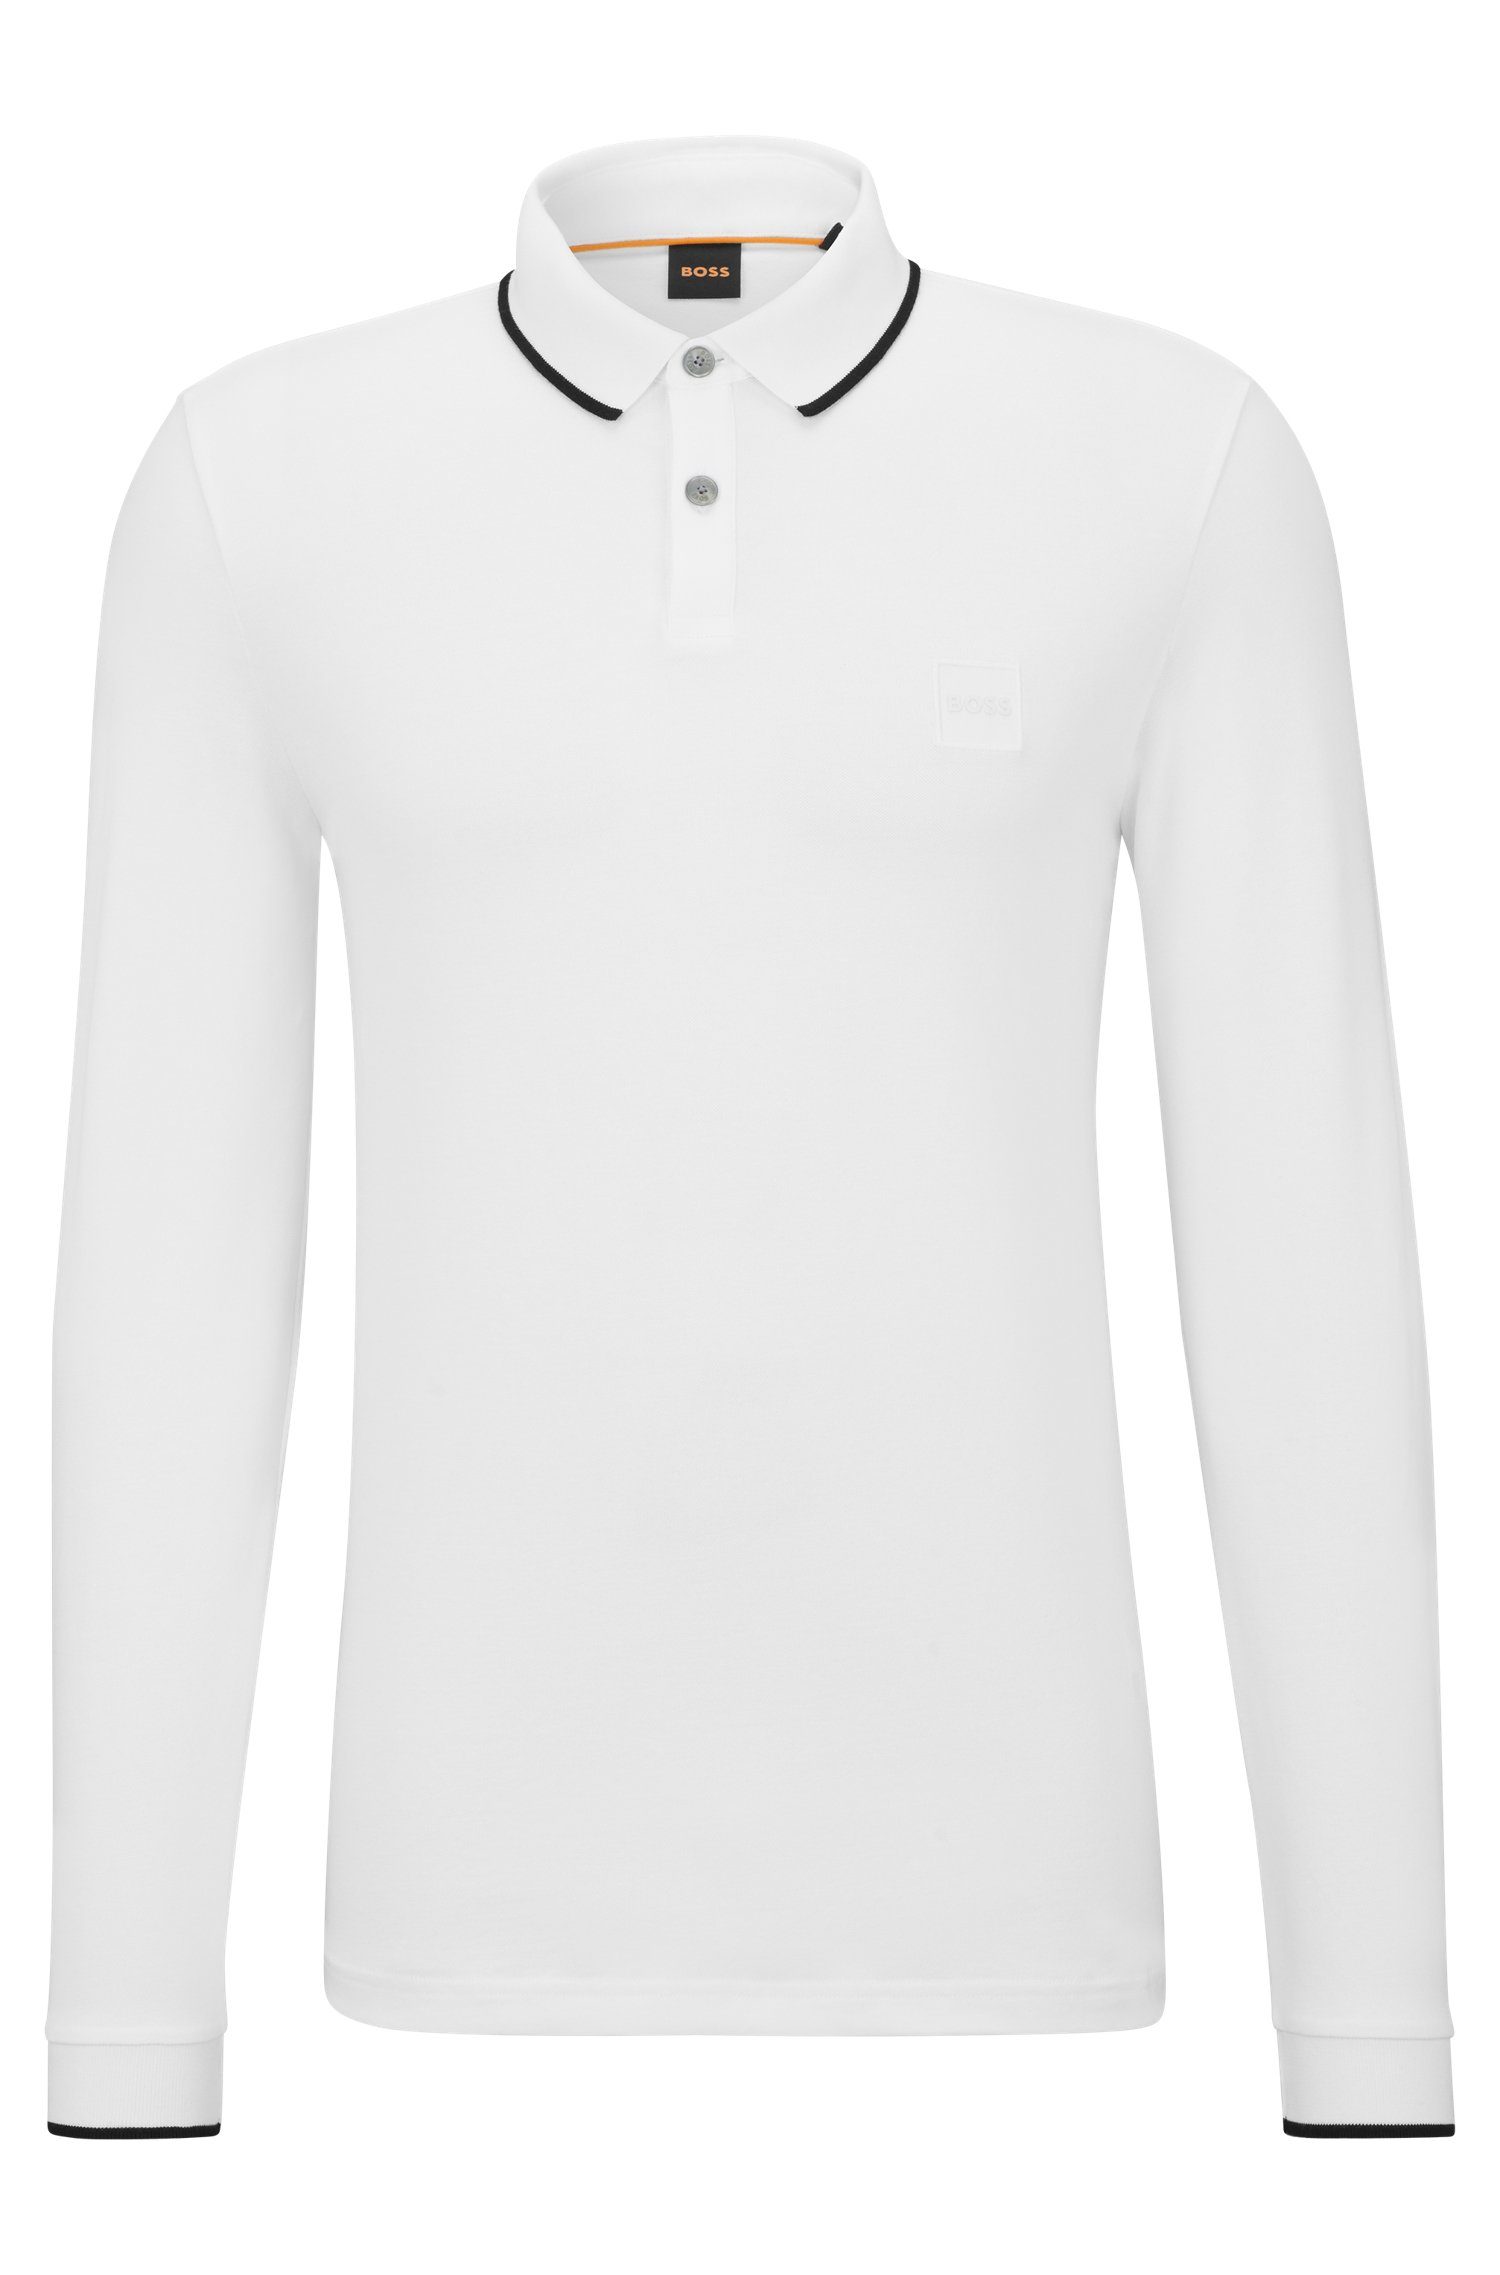 BOSS ORANGE Poloshirt feiner Passertiplong in Baumwollqualität white